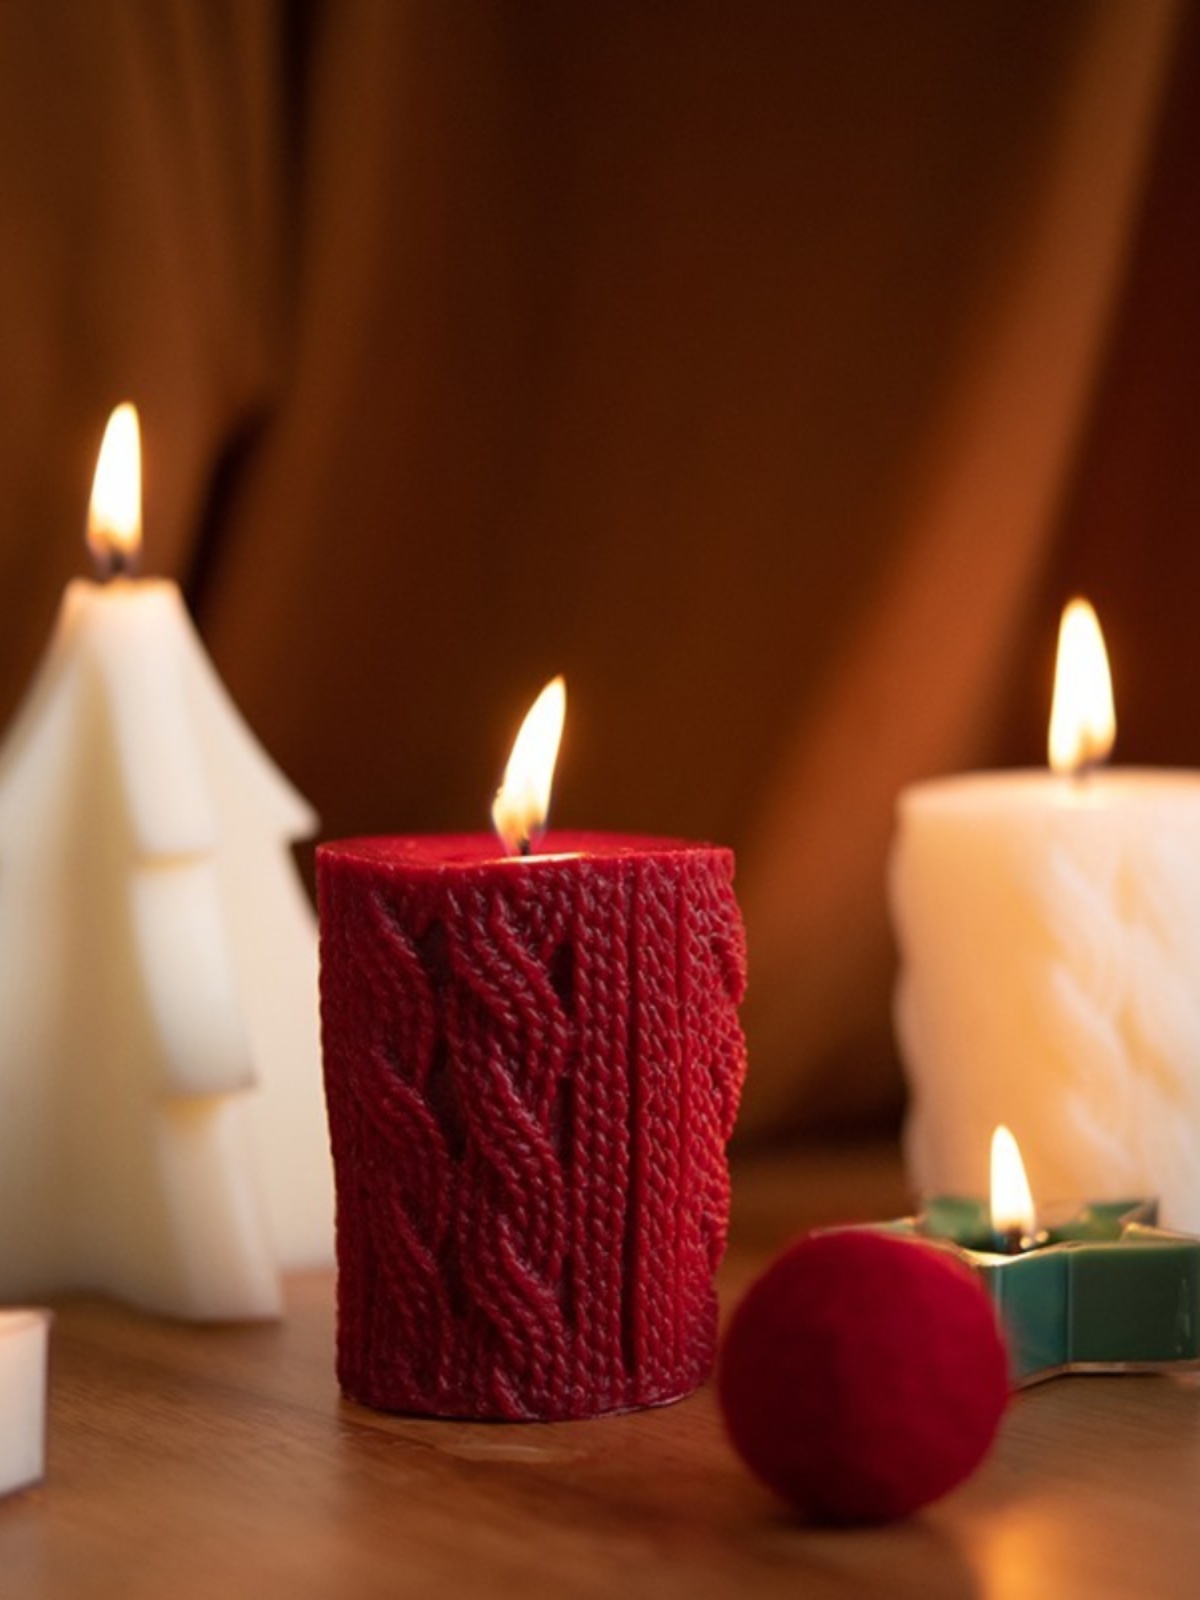 蠟片營造浪漫氛圍聖誕樹蠟燭紅白綠色禮盒套裝